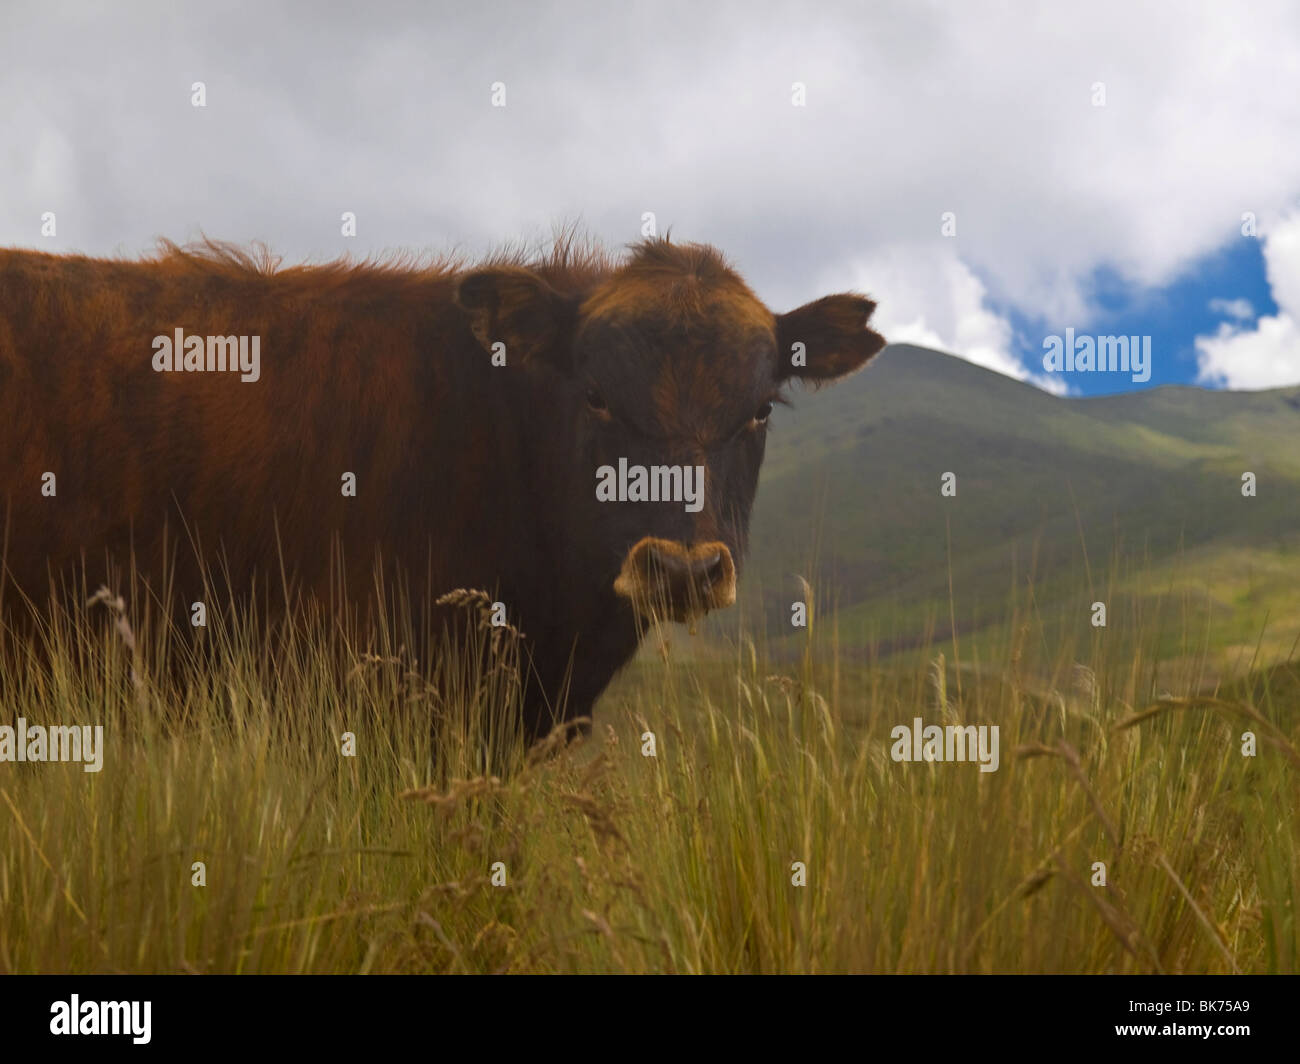 Brown vaca adulta en la pradera mirando a la cámara. Foto de stock